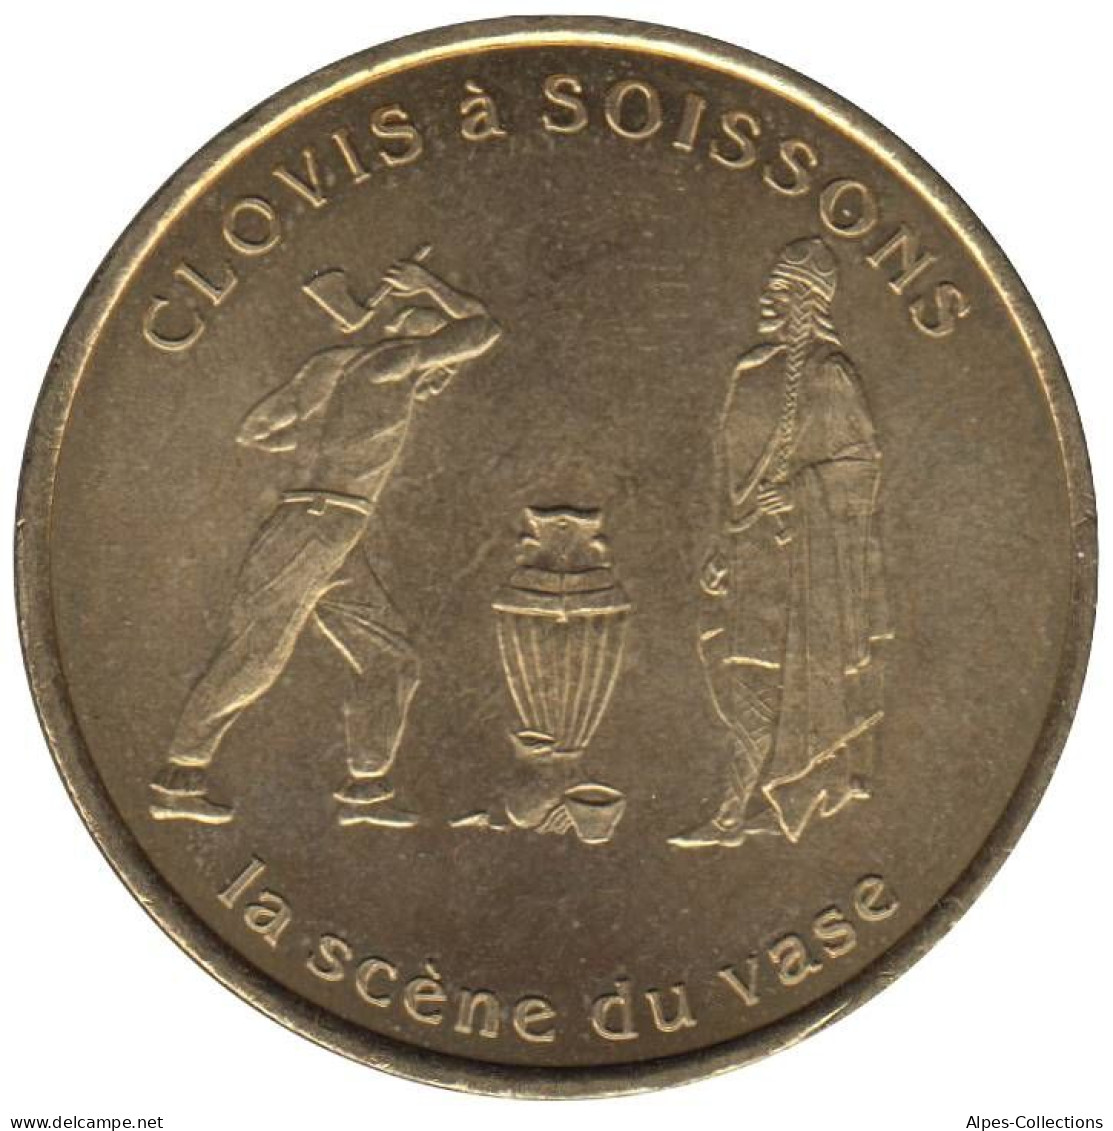 SOISSONS - EU0010.2 - 1 EURO DES VILLES - Réf: T391 - 1997 - Euros Of The Cities